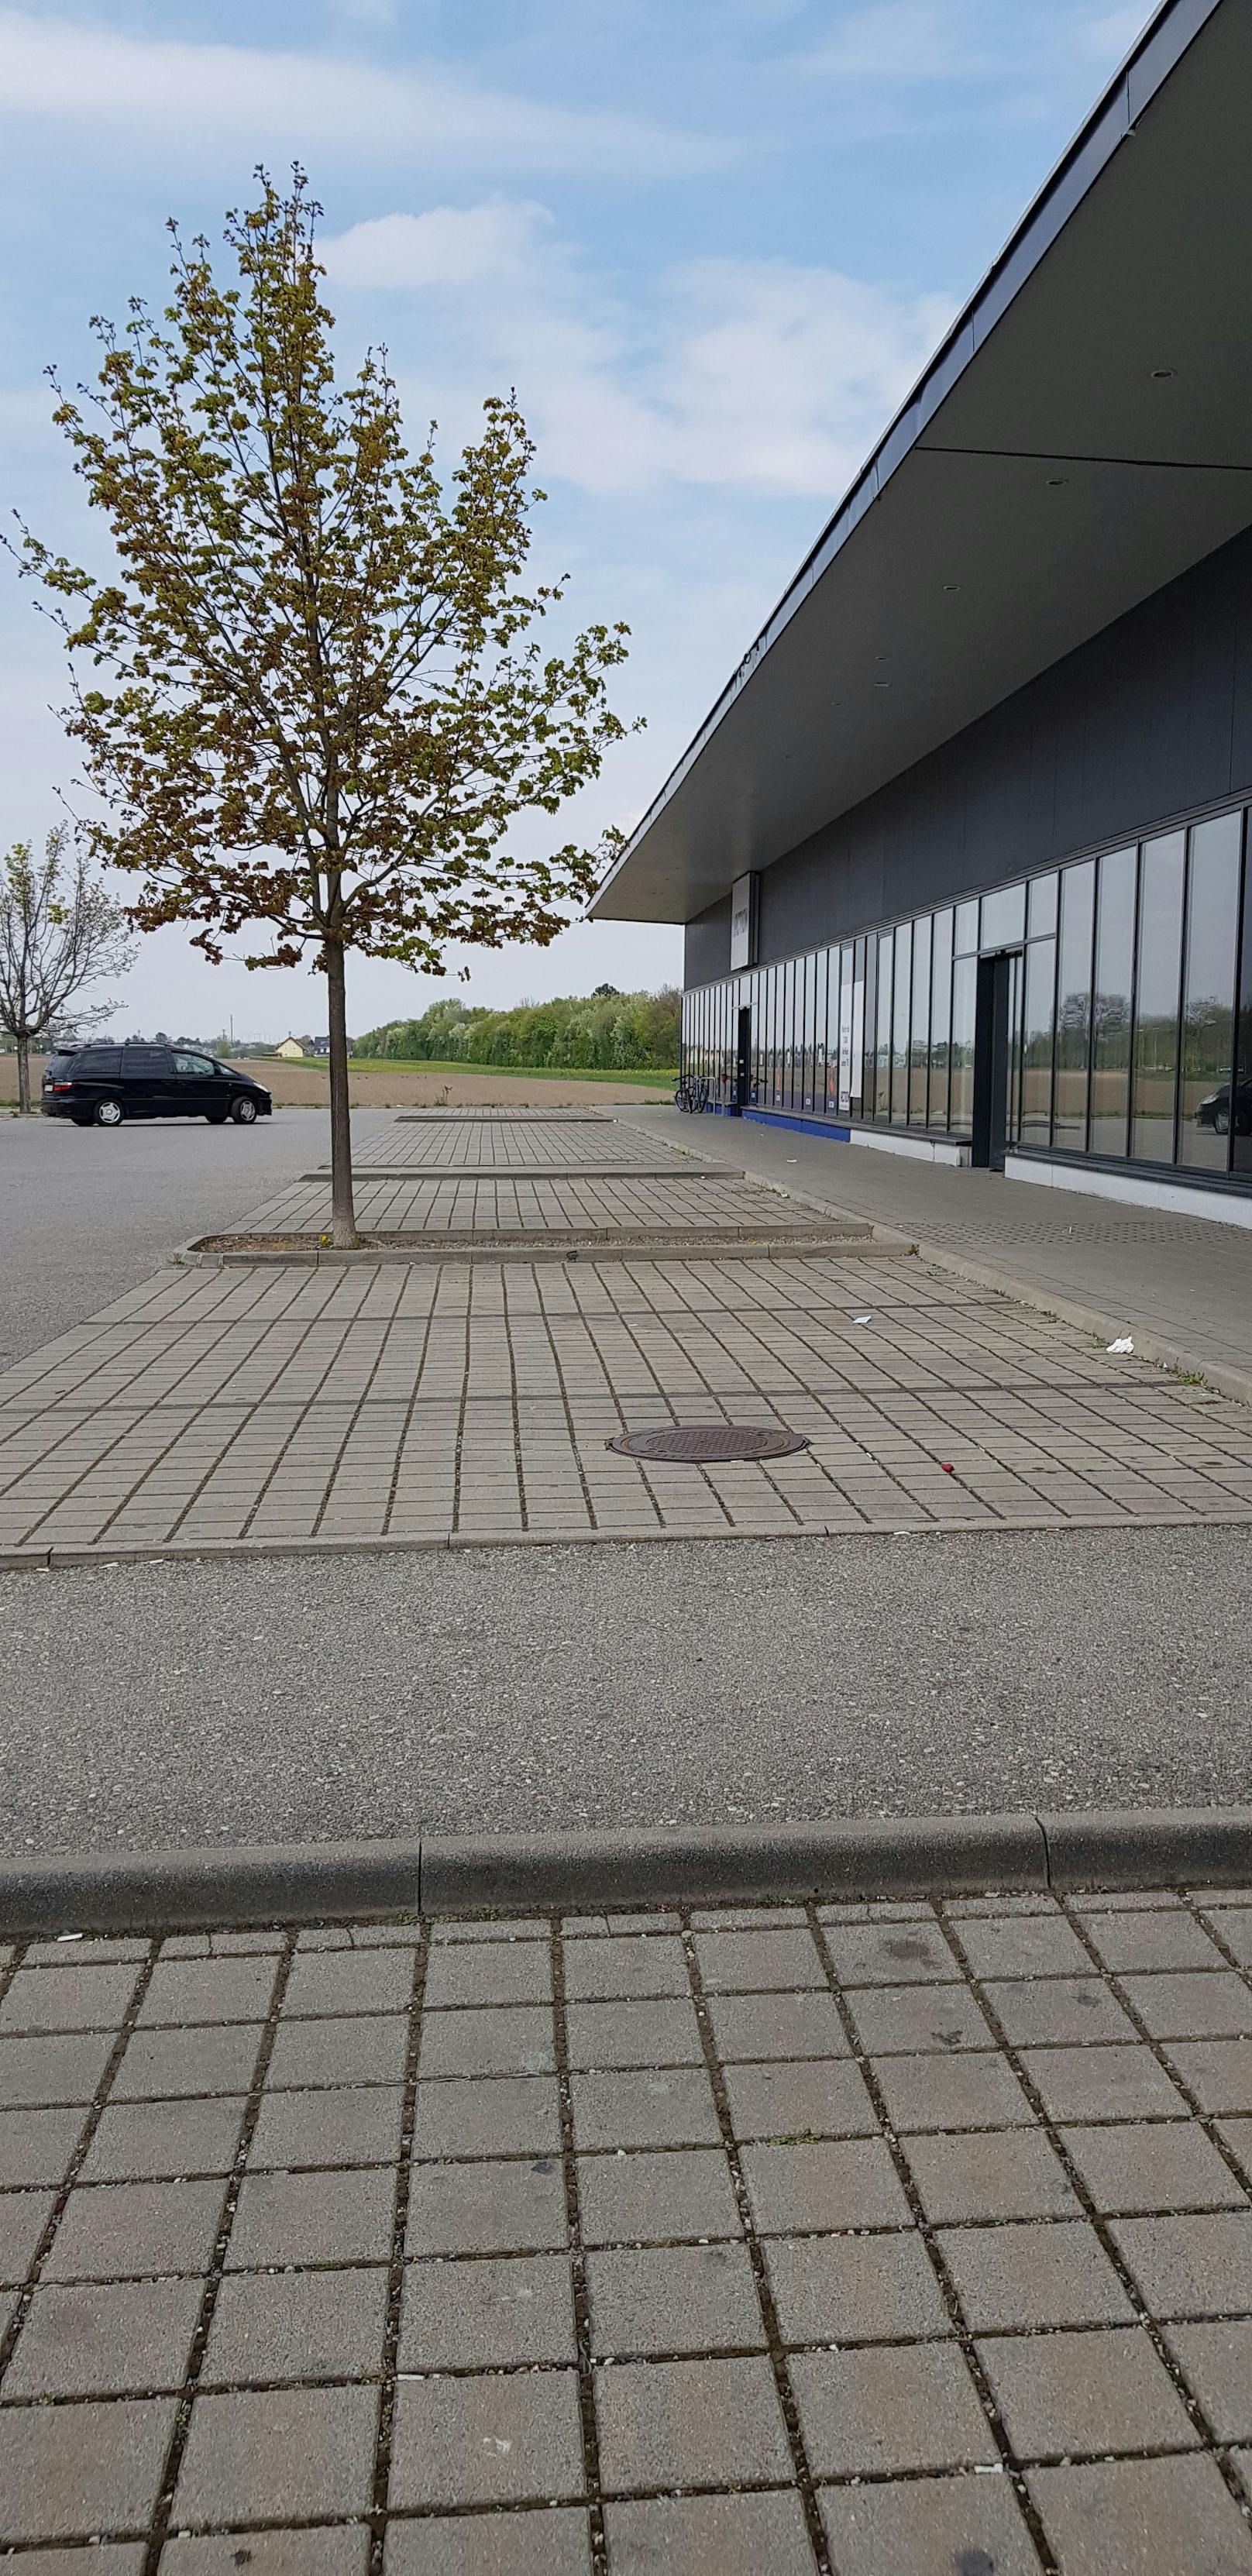 Auf diesem Parkplatz bekommen Kunden eine 50-Euro-Strafe.